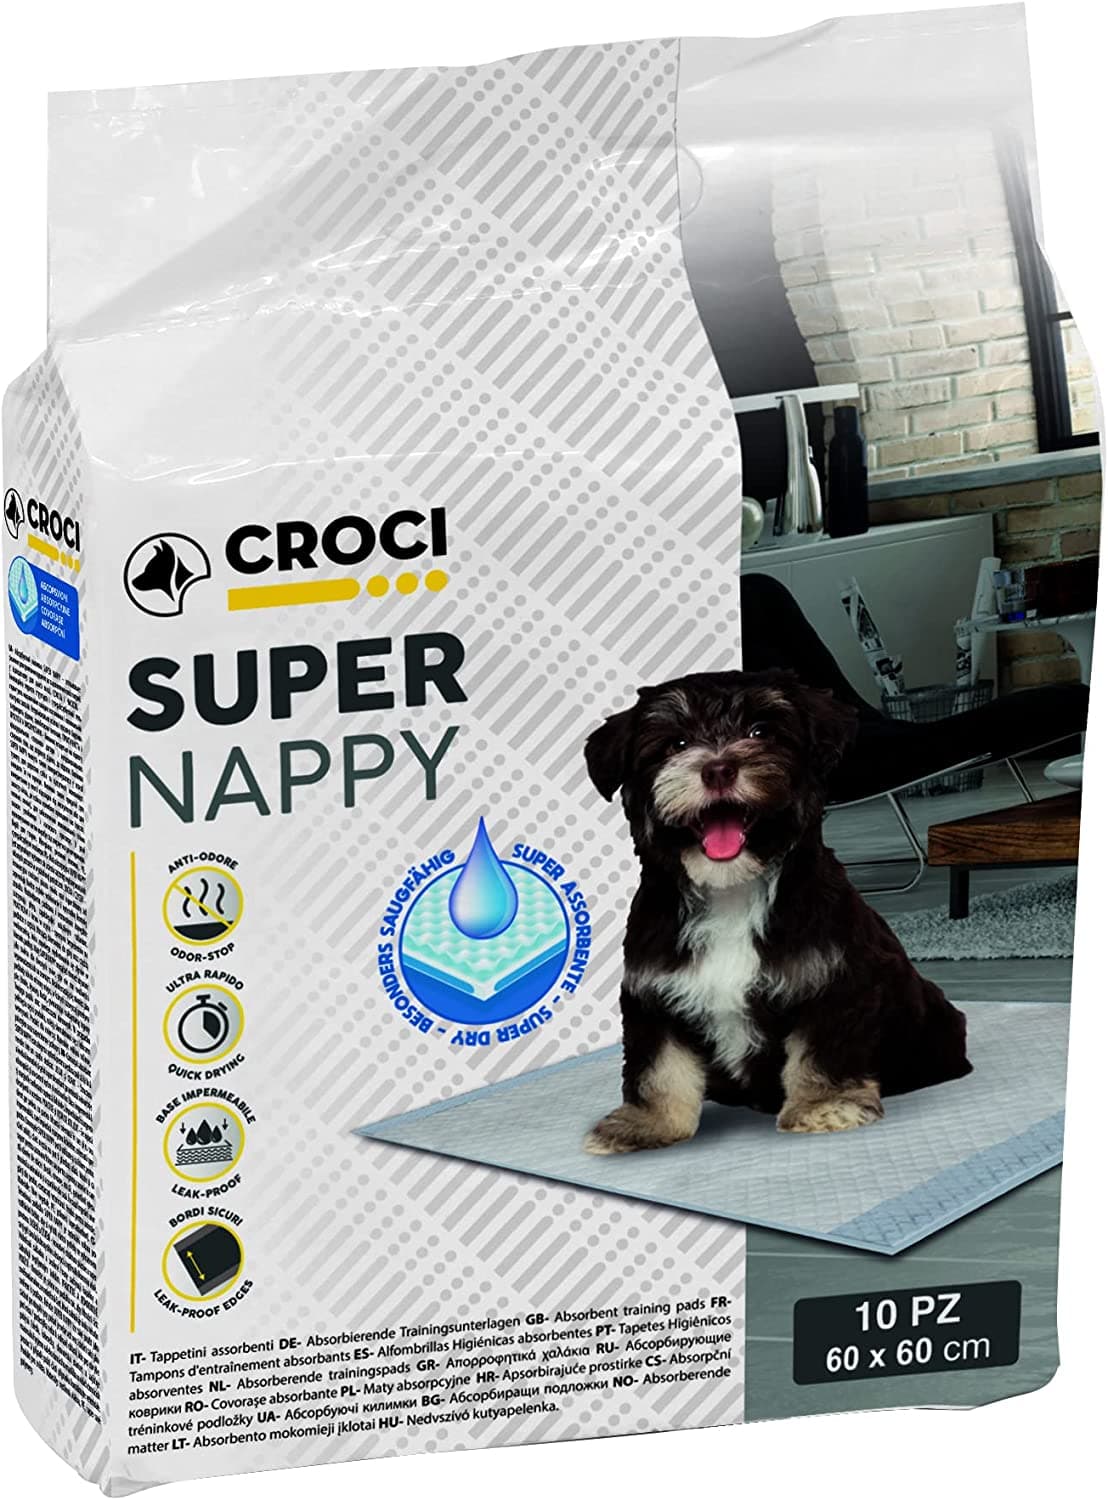 Croci Super Nappy 60/60 см